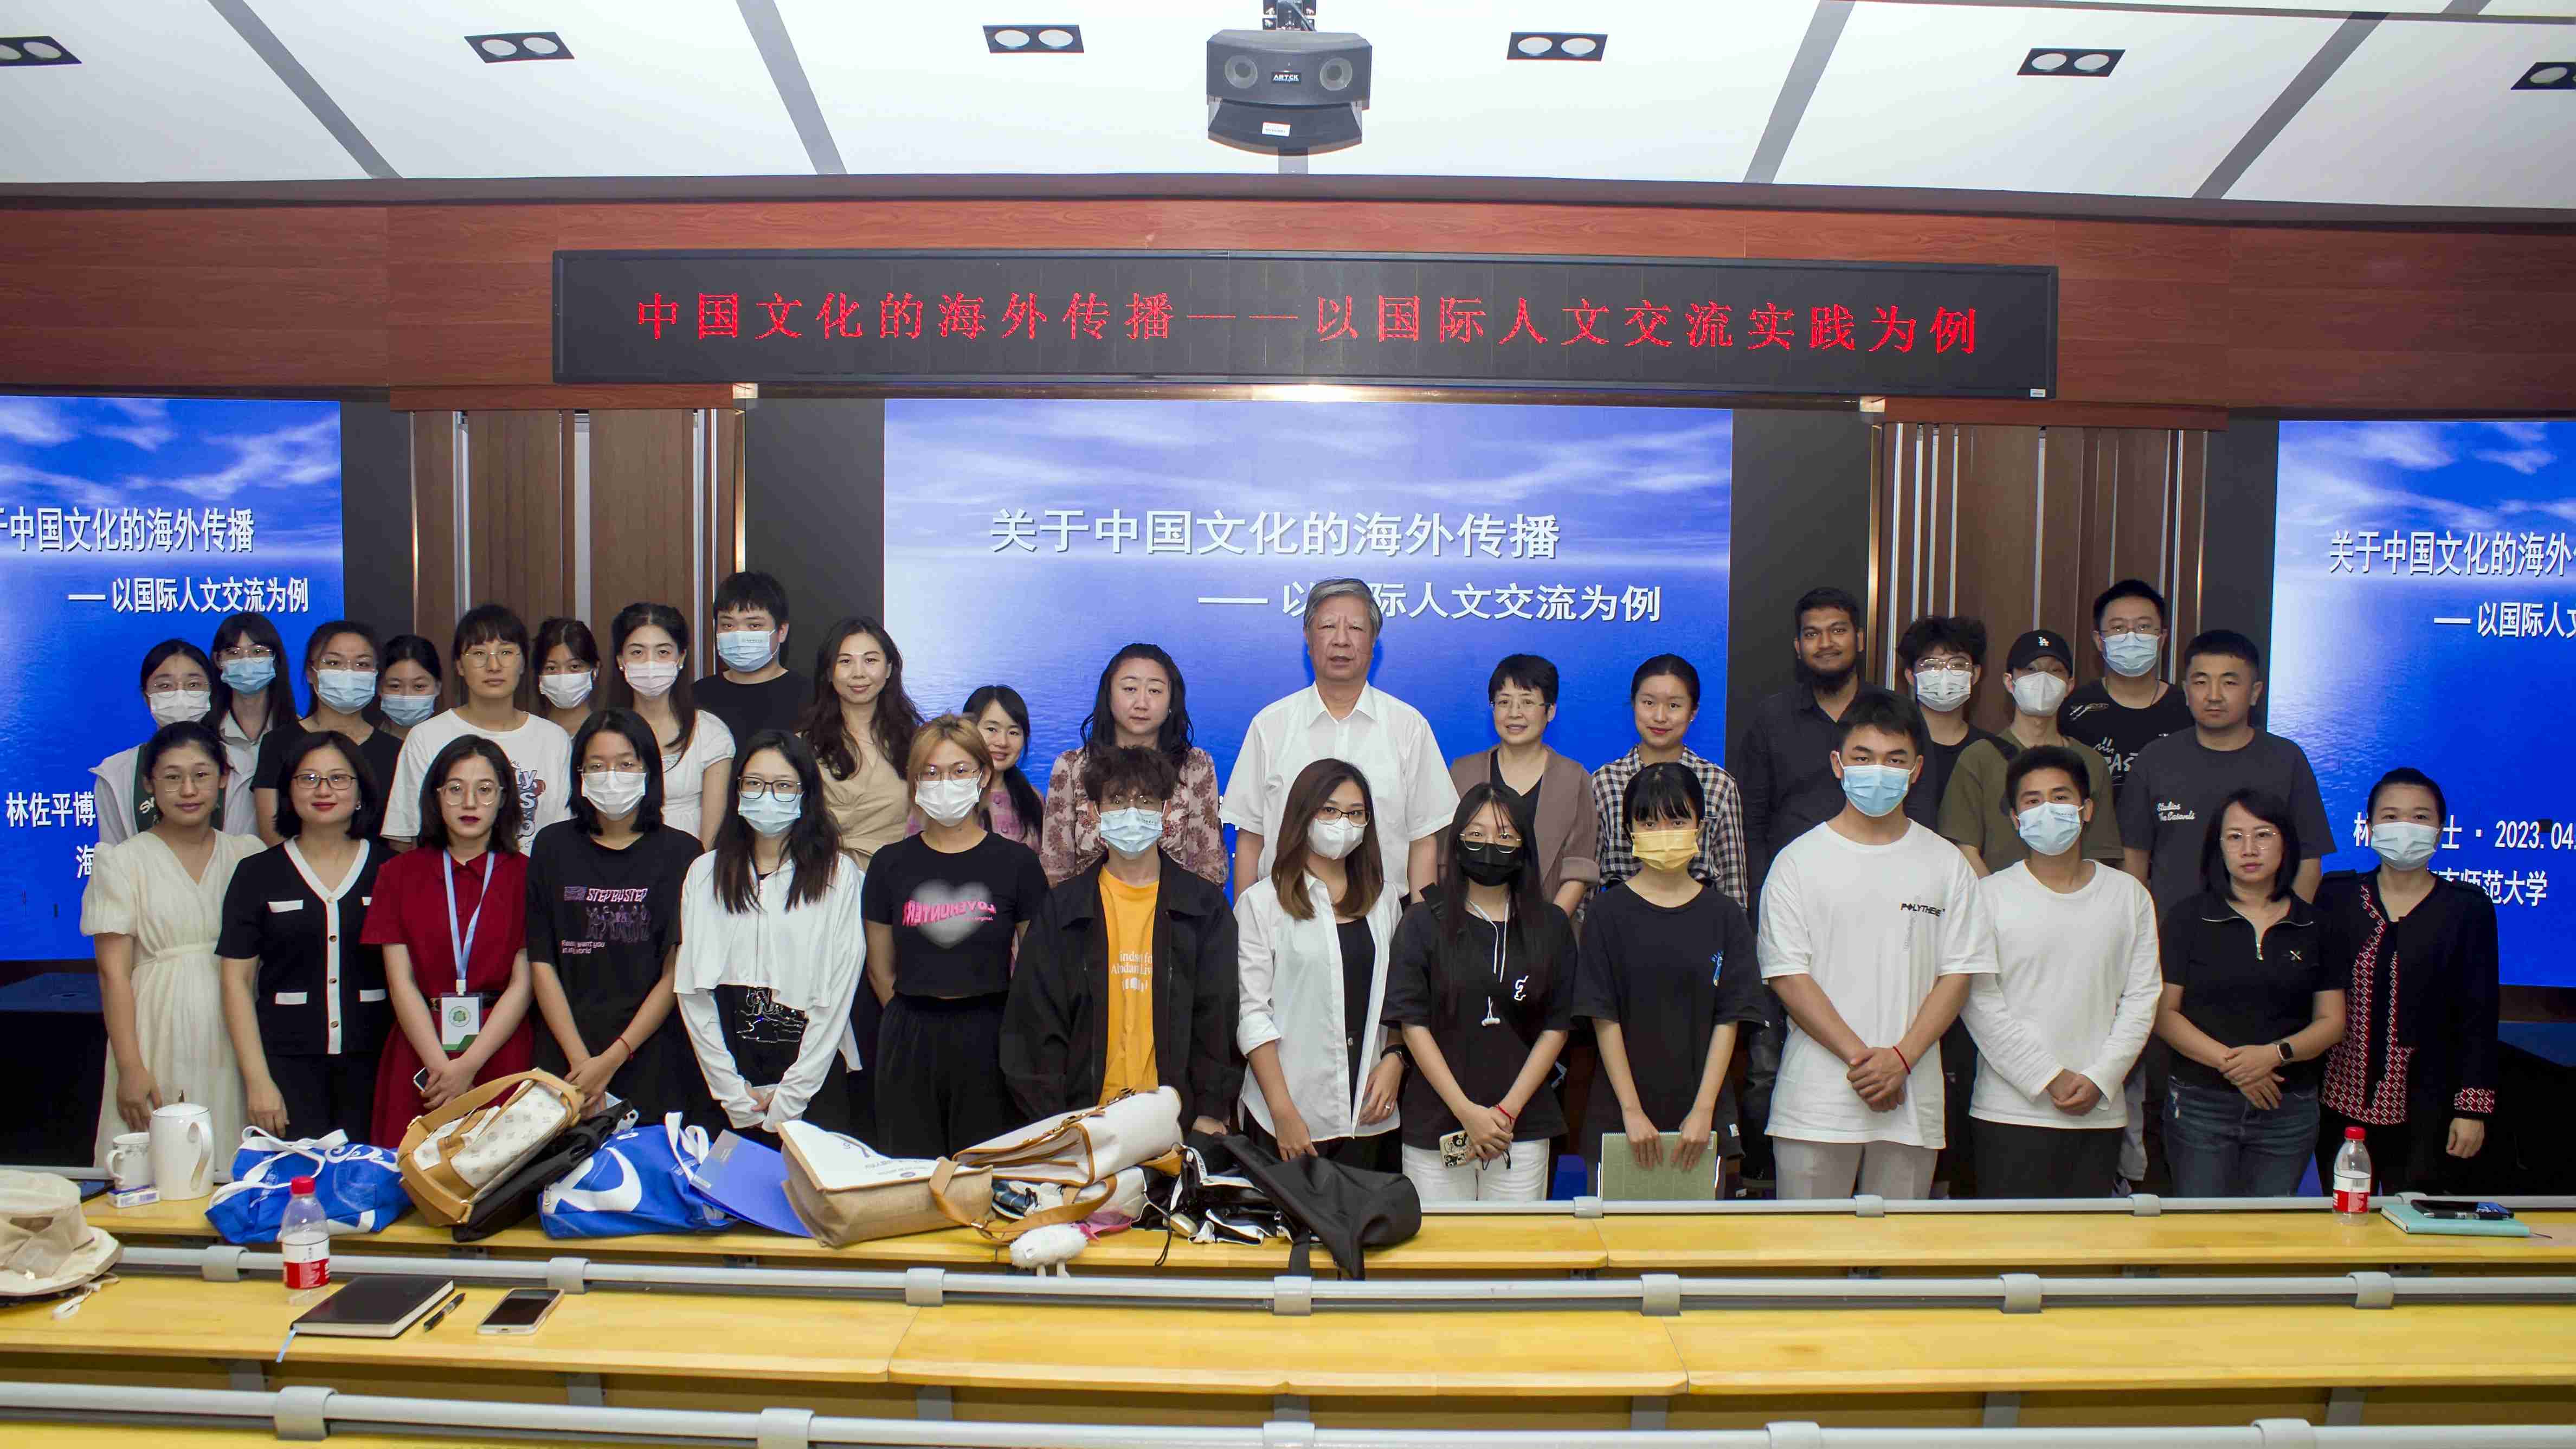 林佐平博士为国际教育学院师生作“中国文化的海外传播”学术报告